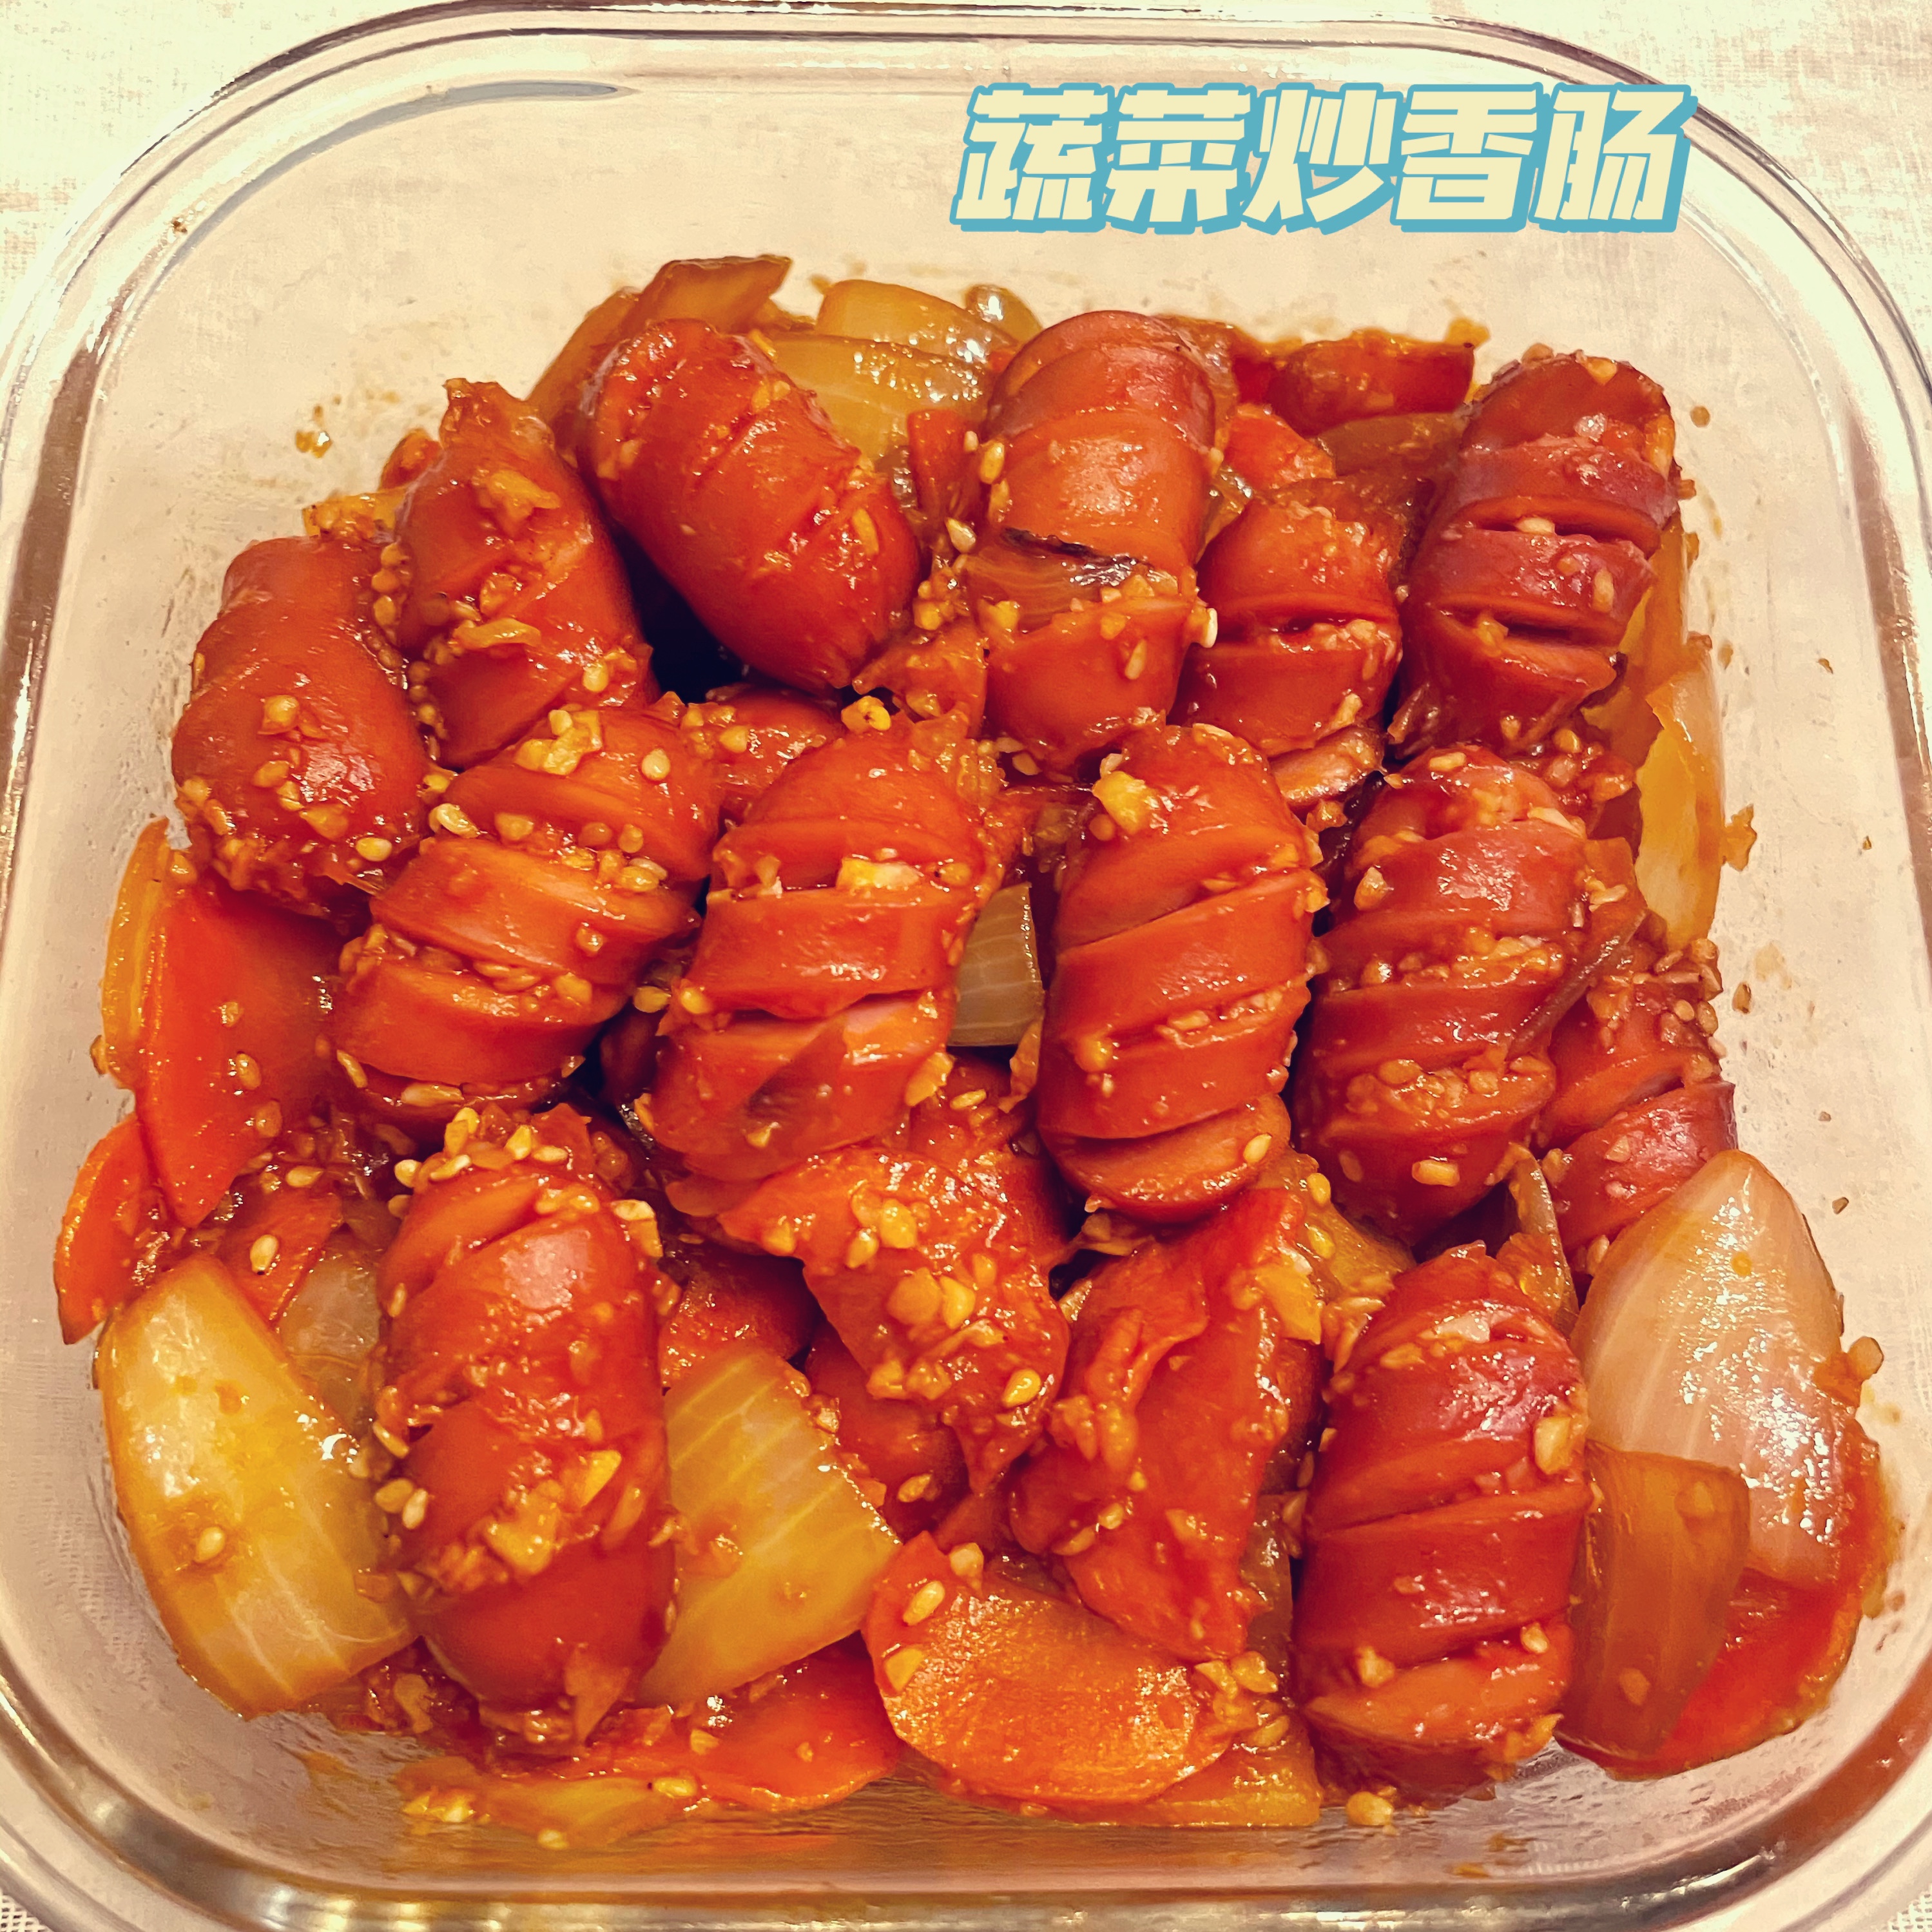 大人小孩都爱吃的韩国小菜——蔬菜炒香肠的做法